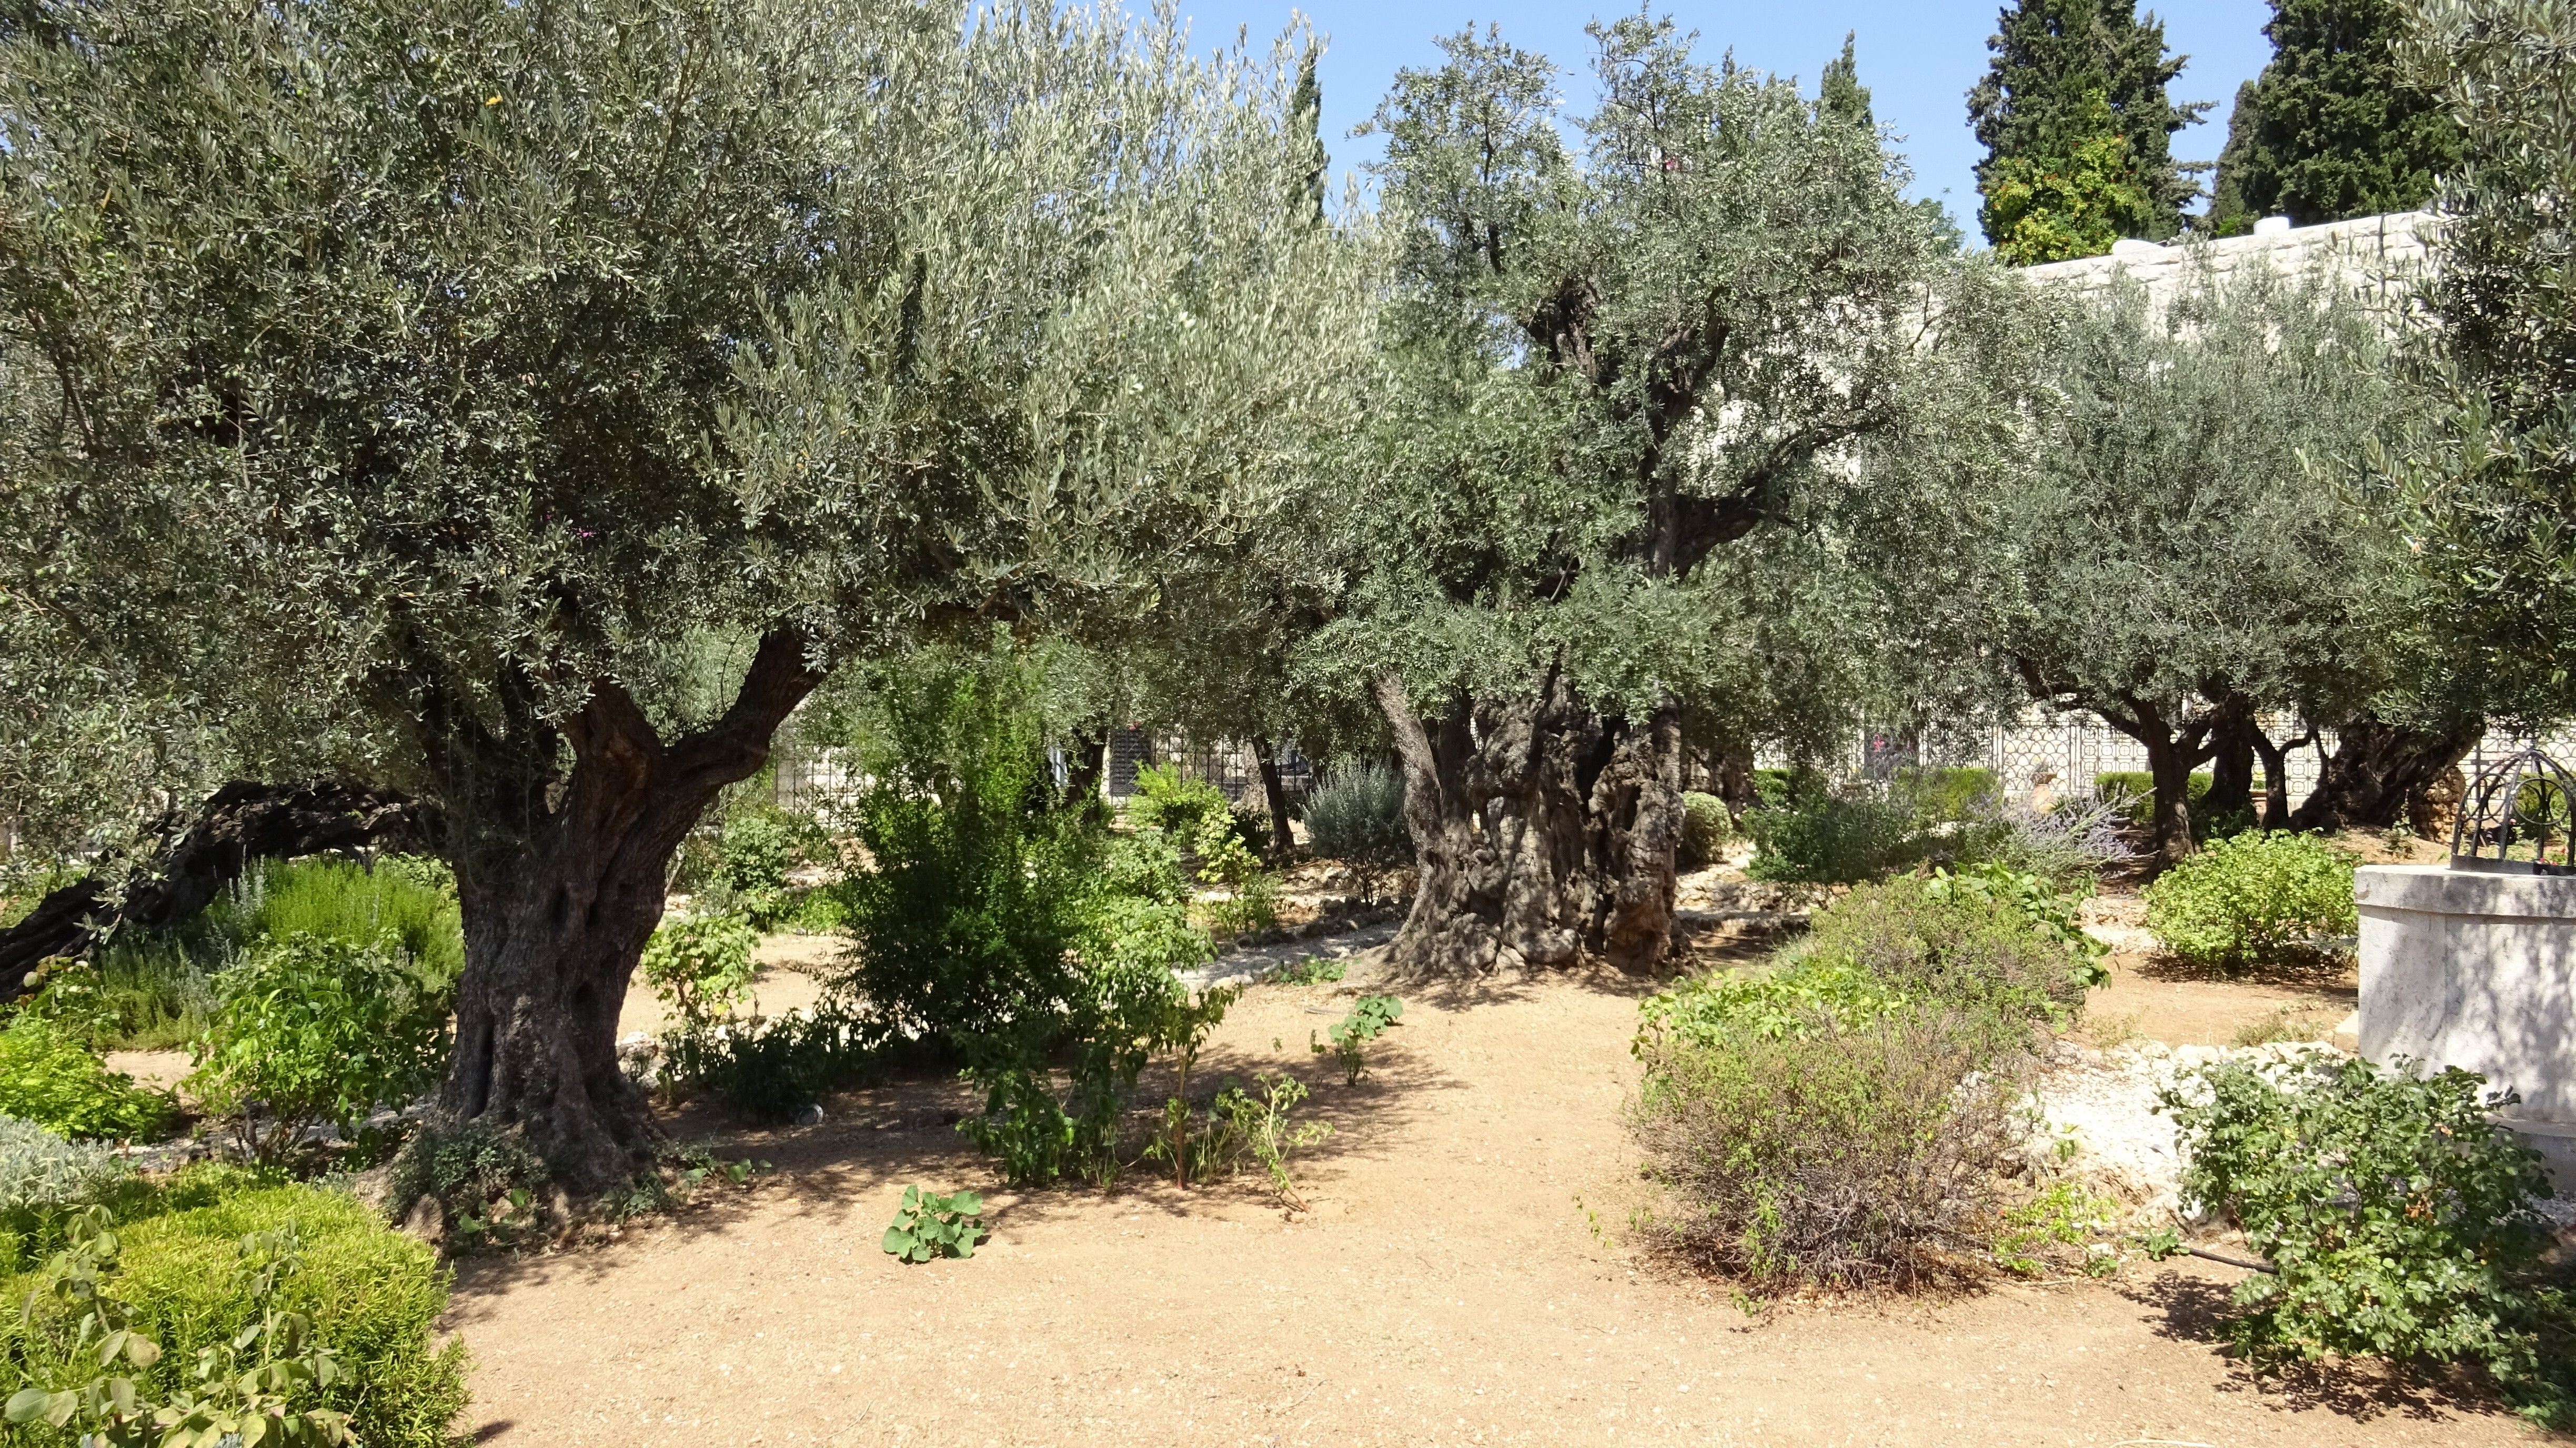 Jerusalem - Garden of Gethsemane, Mount of Olives